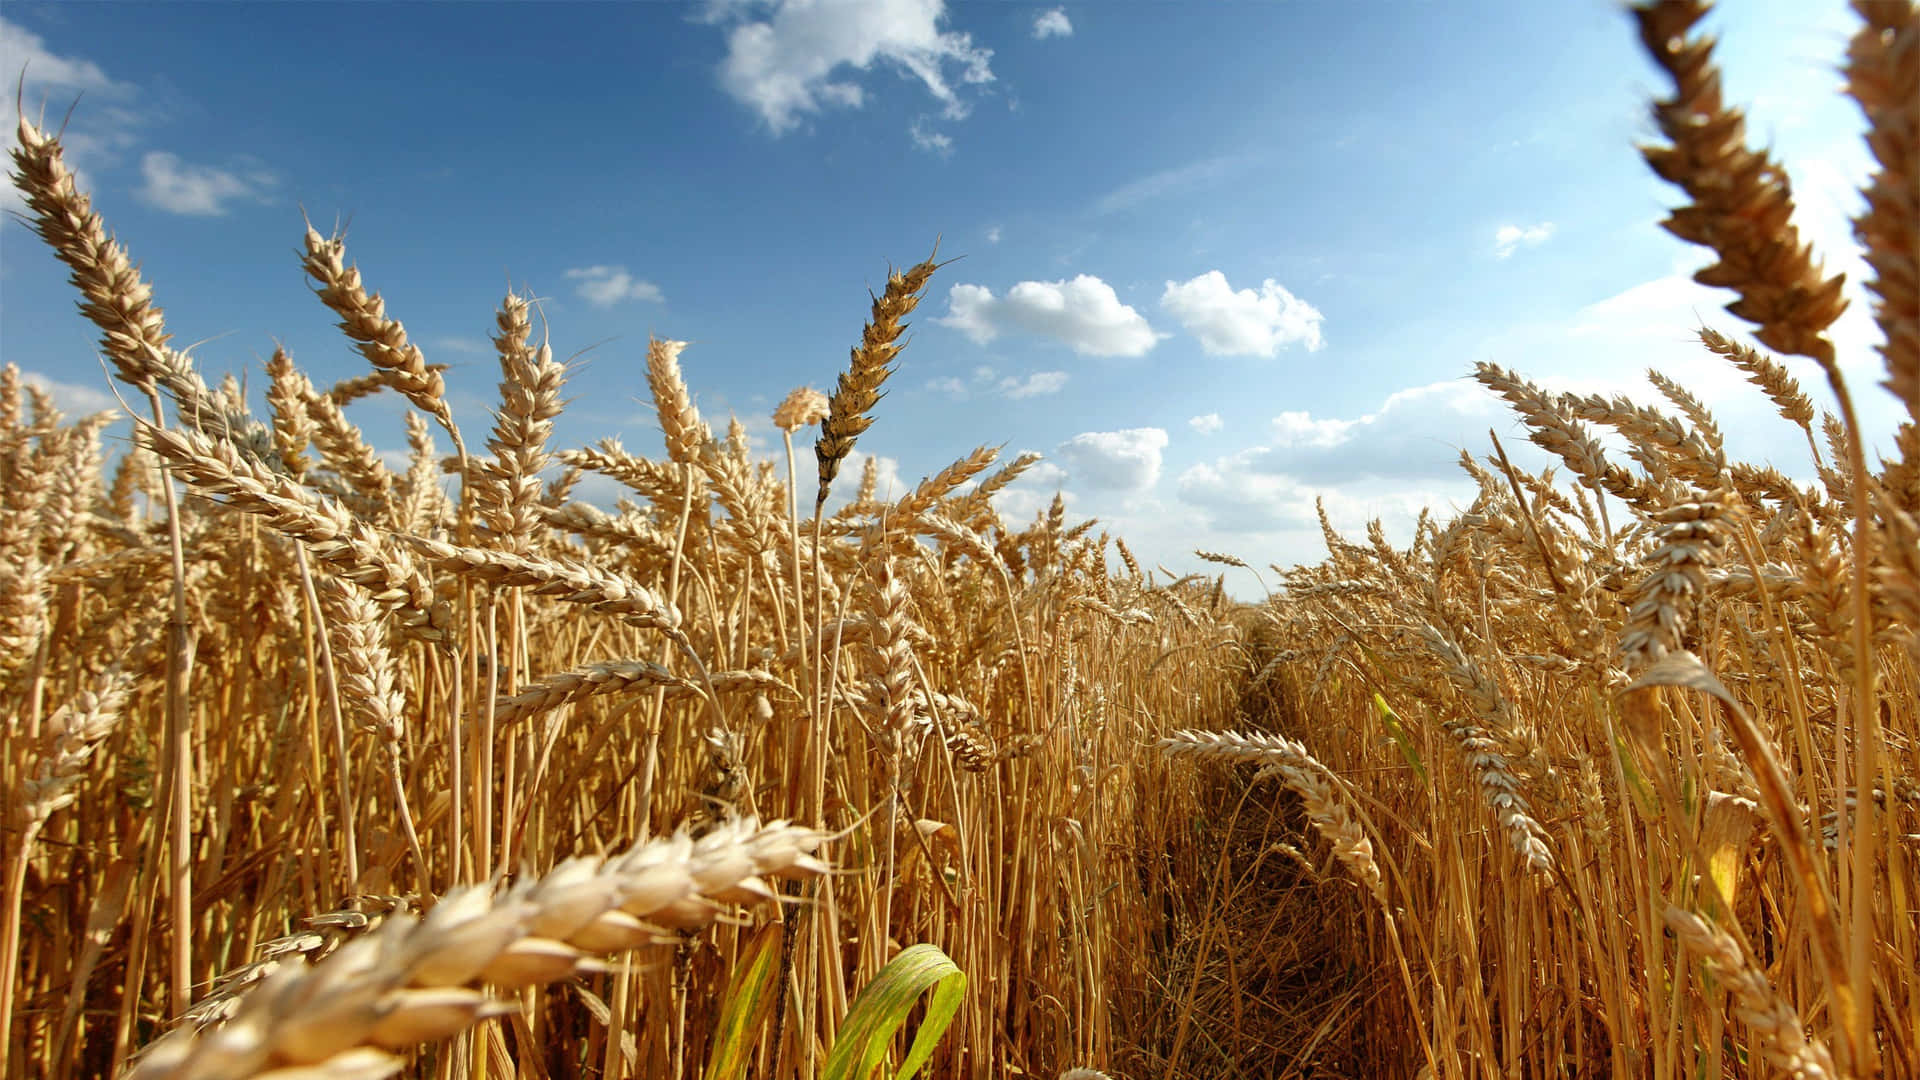 Stunning Field of Golden Wheat